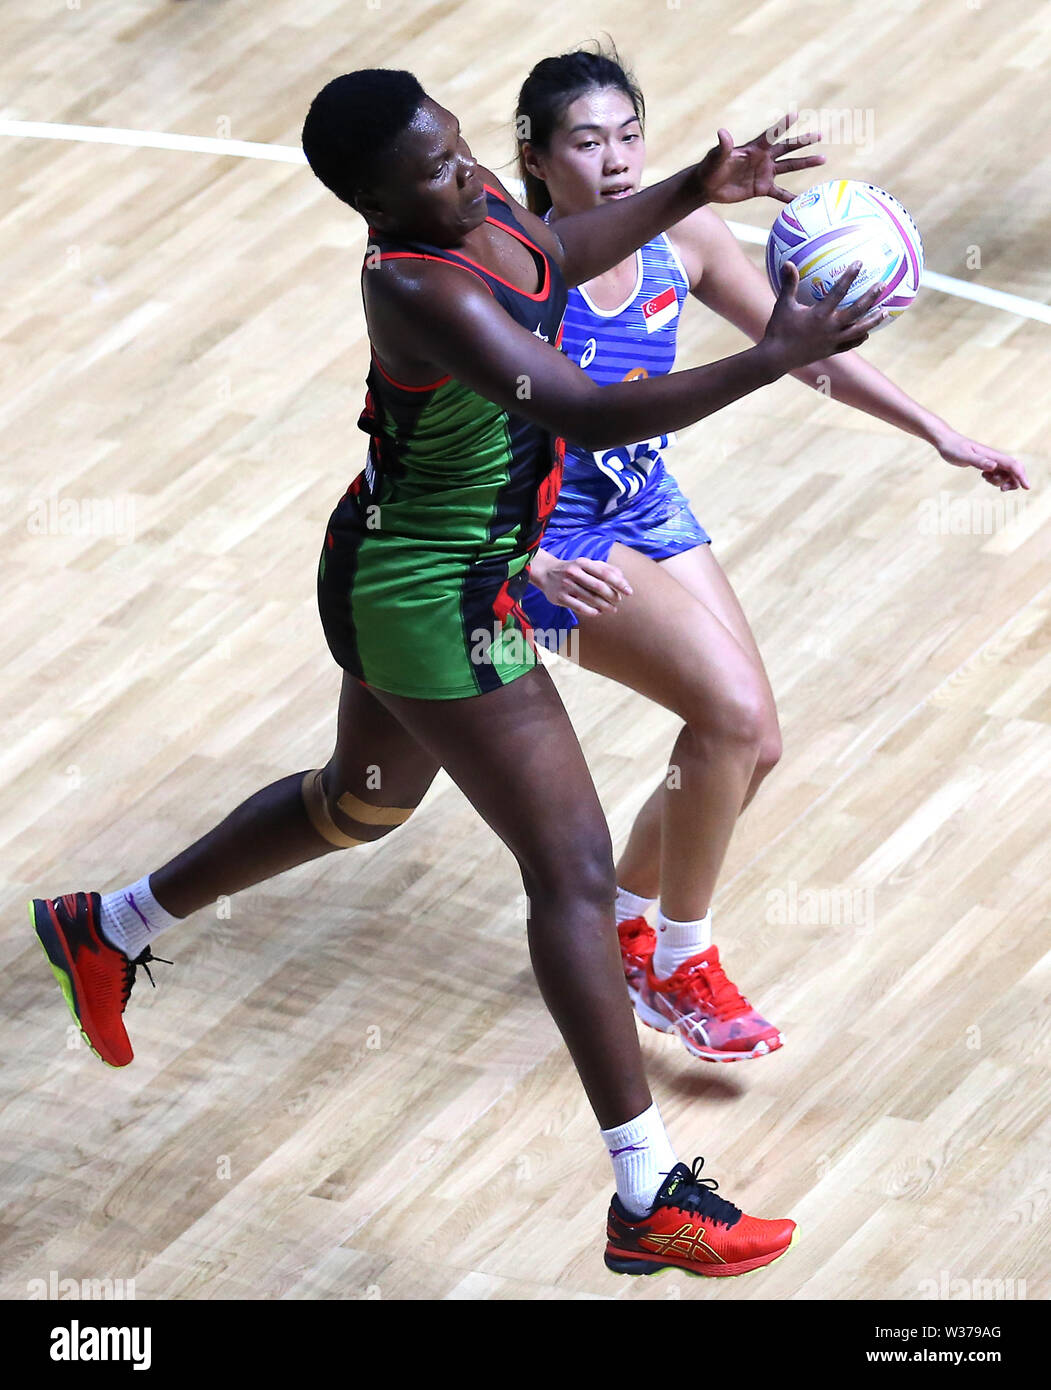 Malawi la Alinafe Kamwala (sinistra) e Singapore Joanne Toh battaglia per la sfera durante il Netball World Cup Match al M&S Bank Arena, Liverpool. Foto Stock